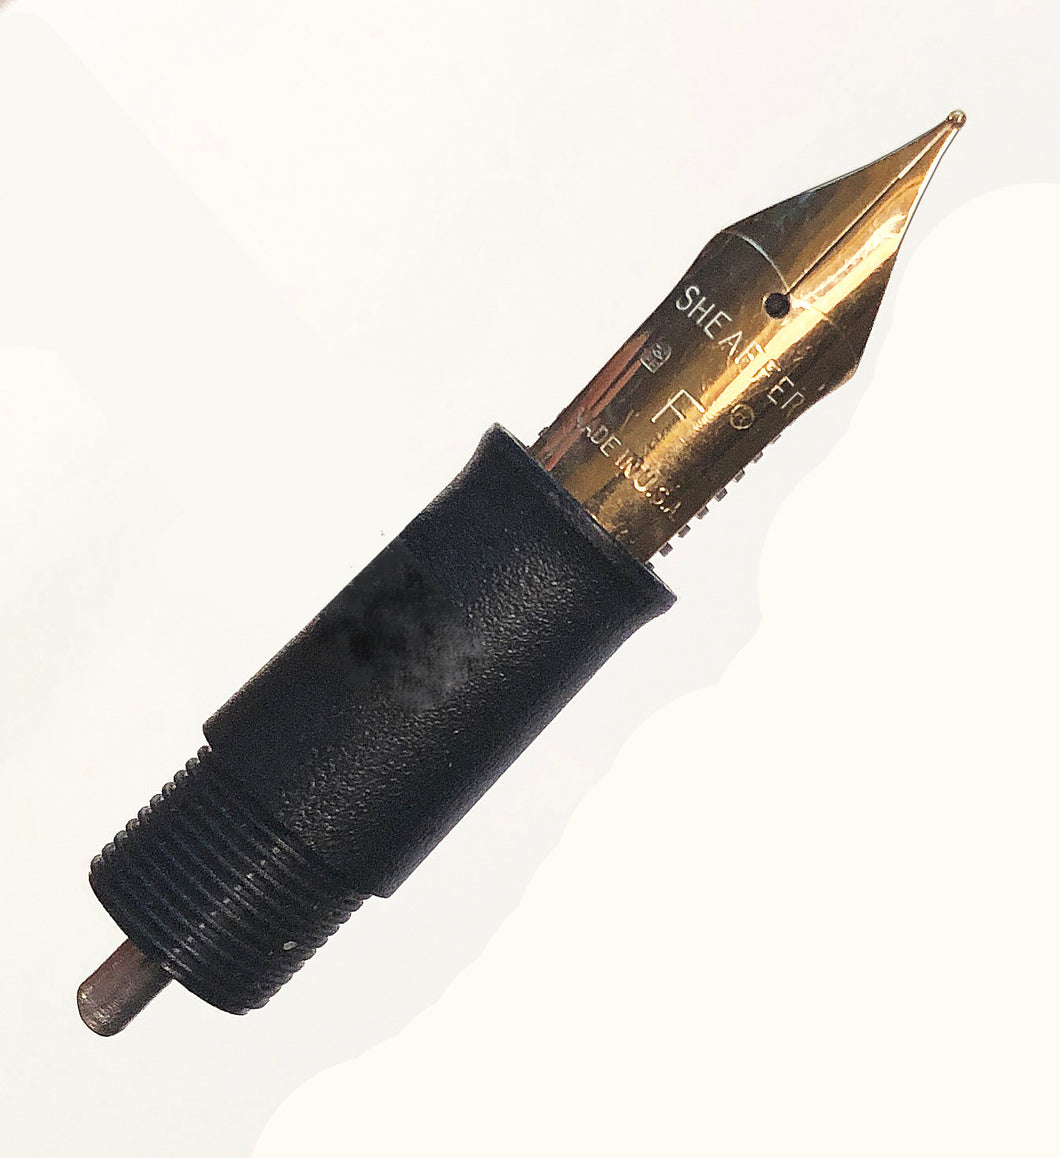 Sheaffer Cartridge pen, nib & section, Fine